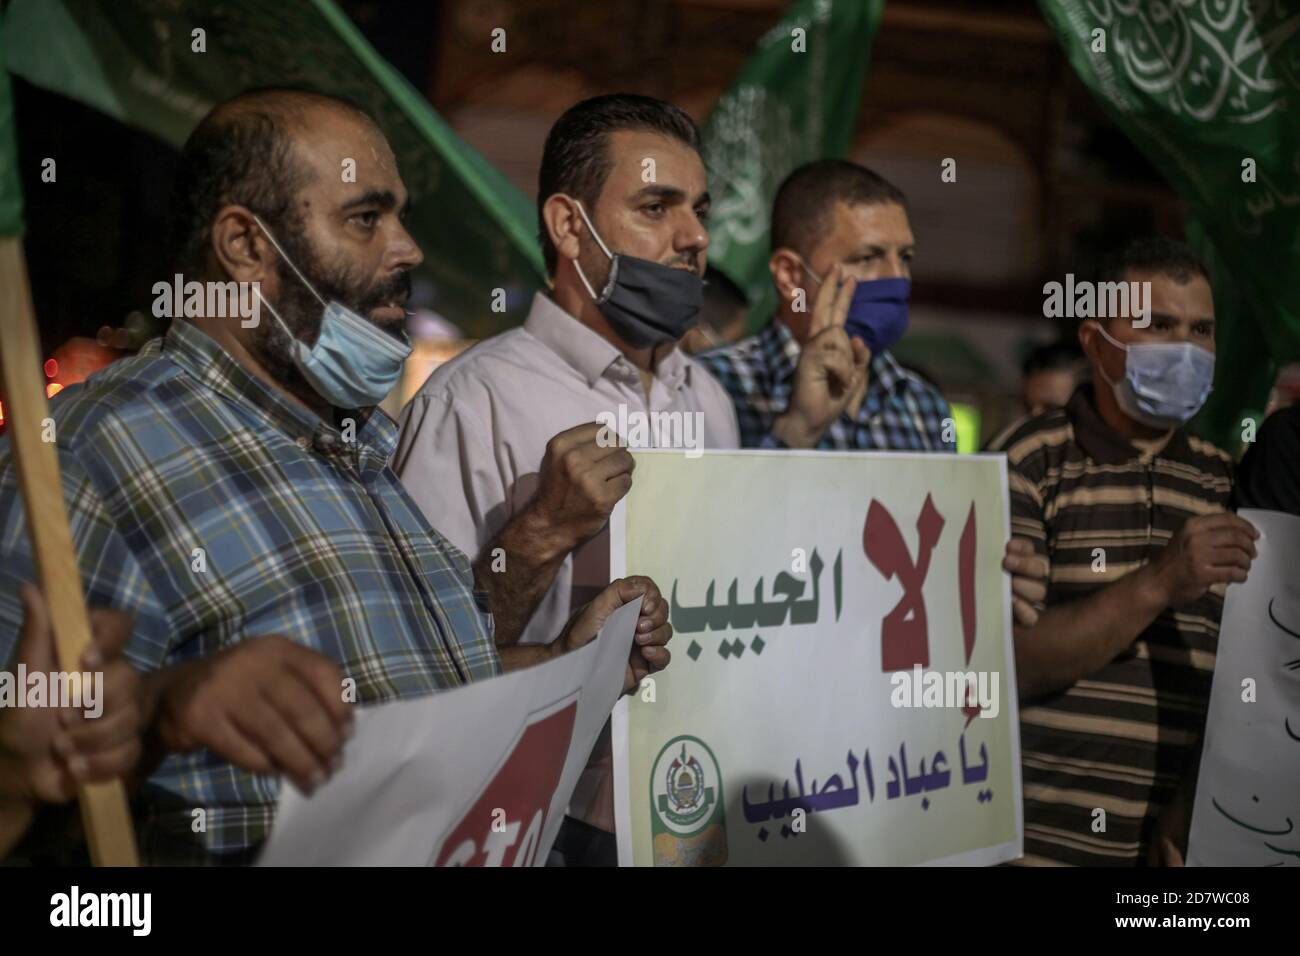 Los manifestantes sostenían pancartas con inscripciones en árabe durante la  manifestación.los palestinos en la ciudad de Rafah protestan contra la  publicación de dibujos animados como el Profeta Muhammad en un periódico  francés